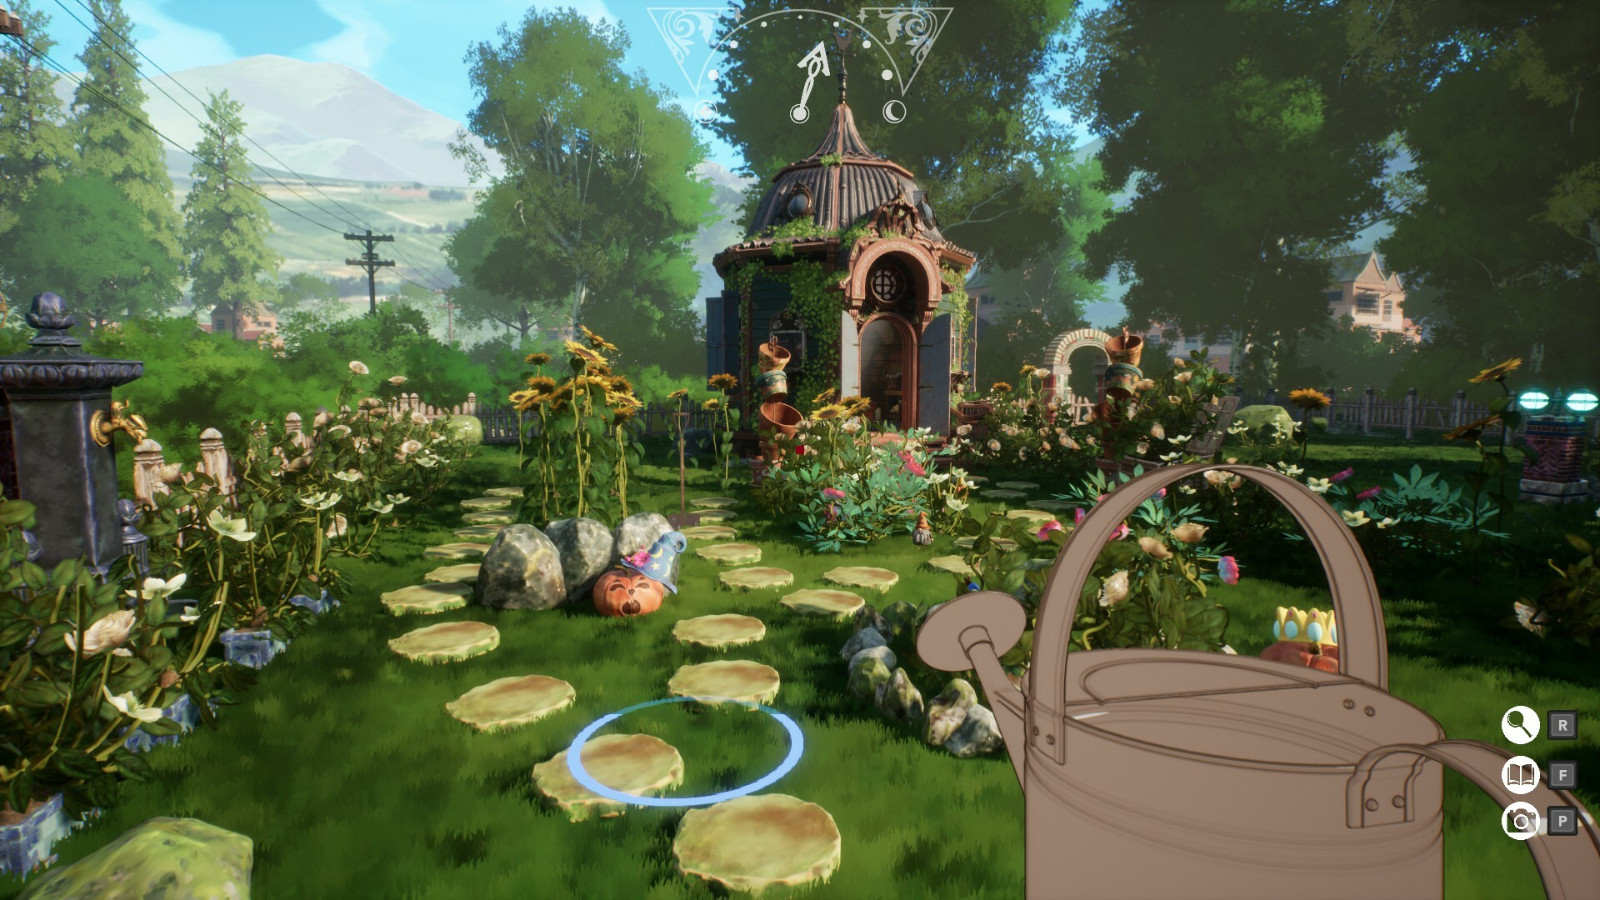 沙盒模拟游戏《花园生活》Steam页面上线 支持简体中文